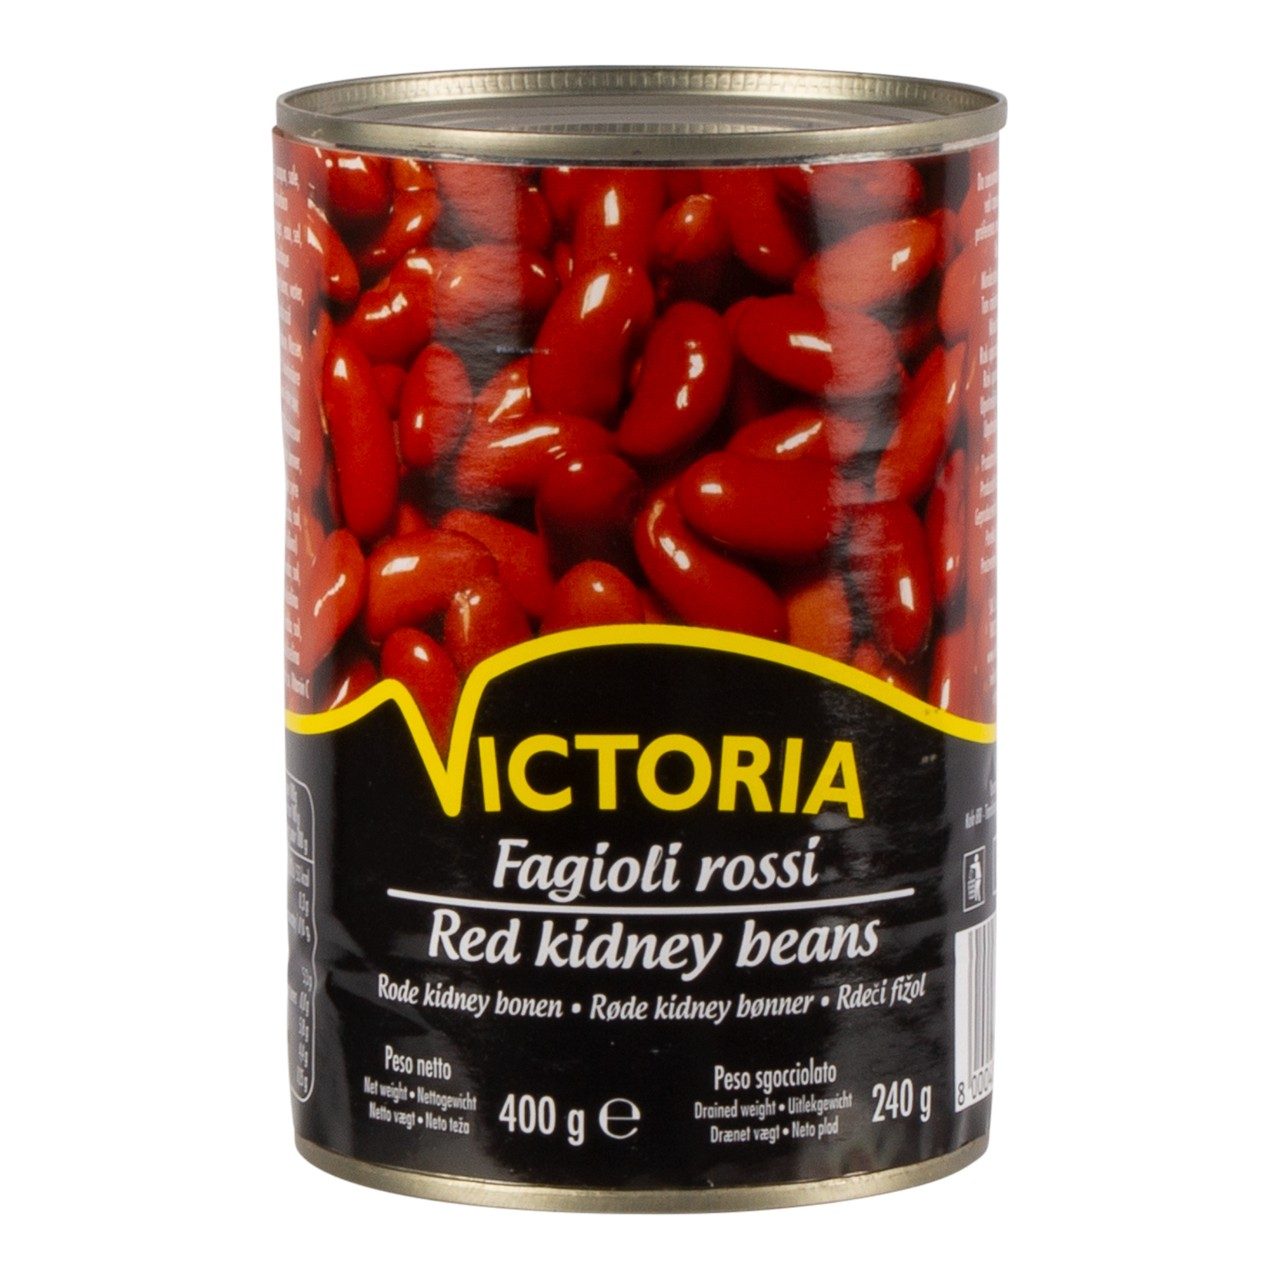 Rode kidney bonen